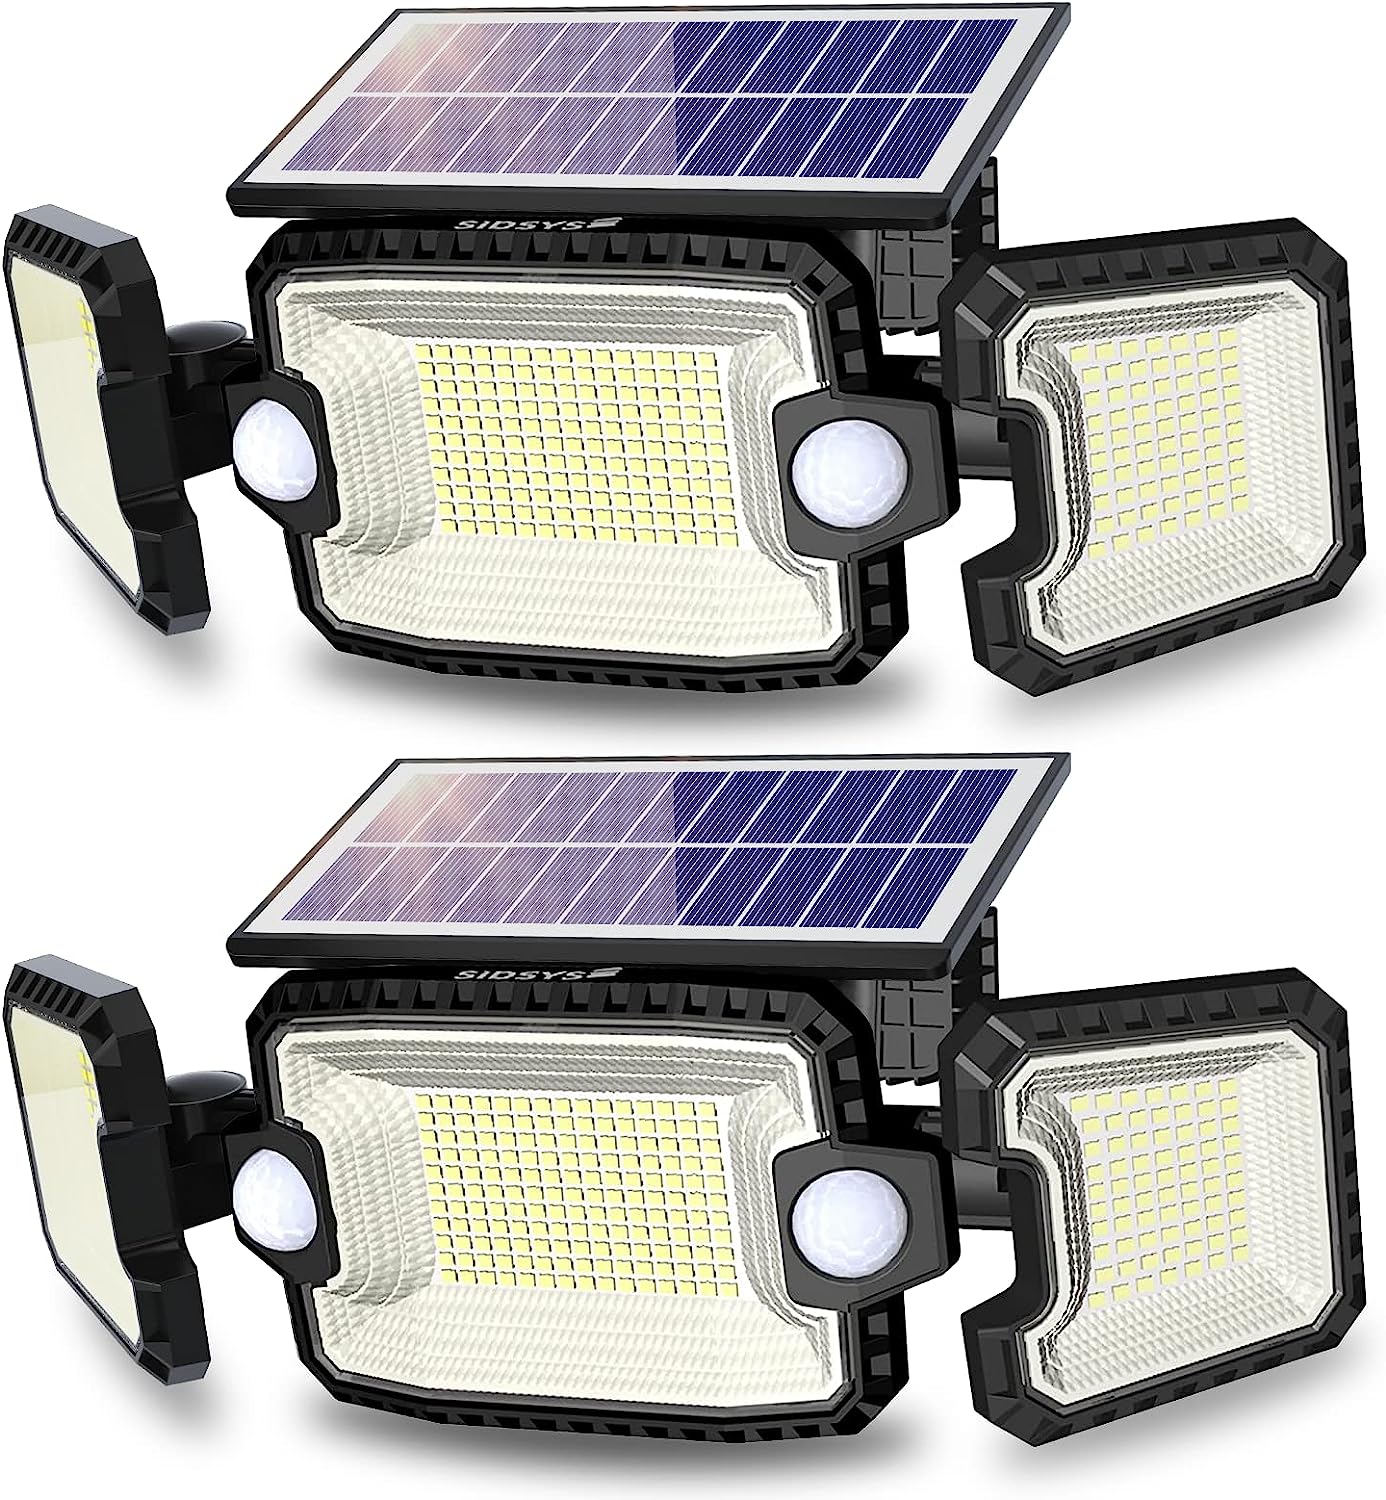 SIDSYS Solar Outdoor Lights, IP65 Waterproof [...]